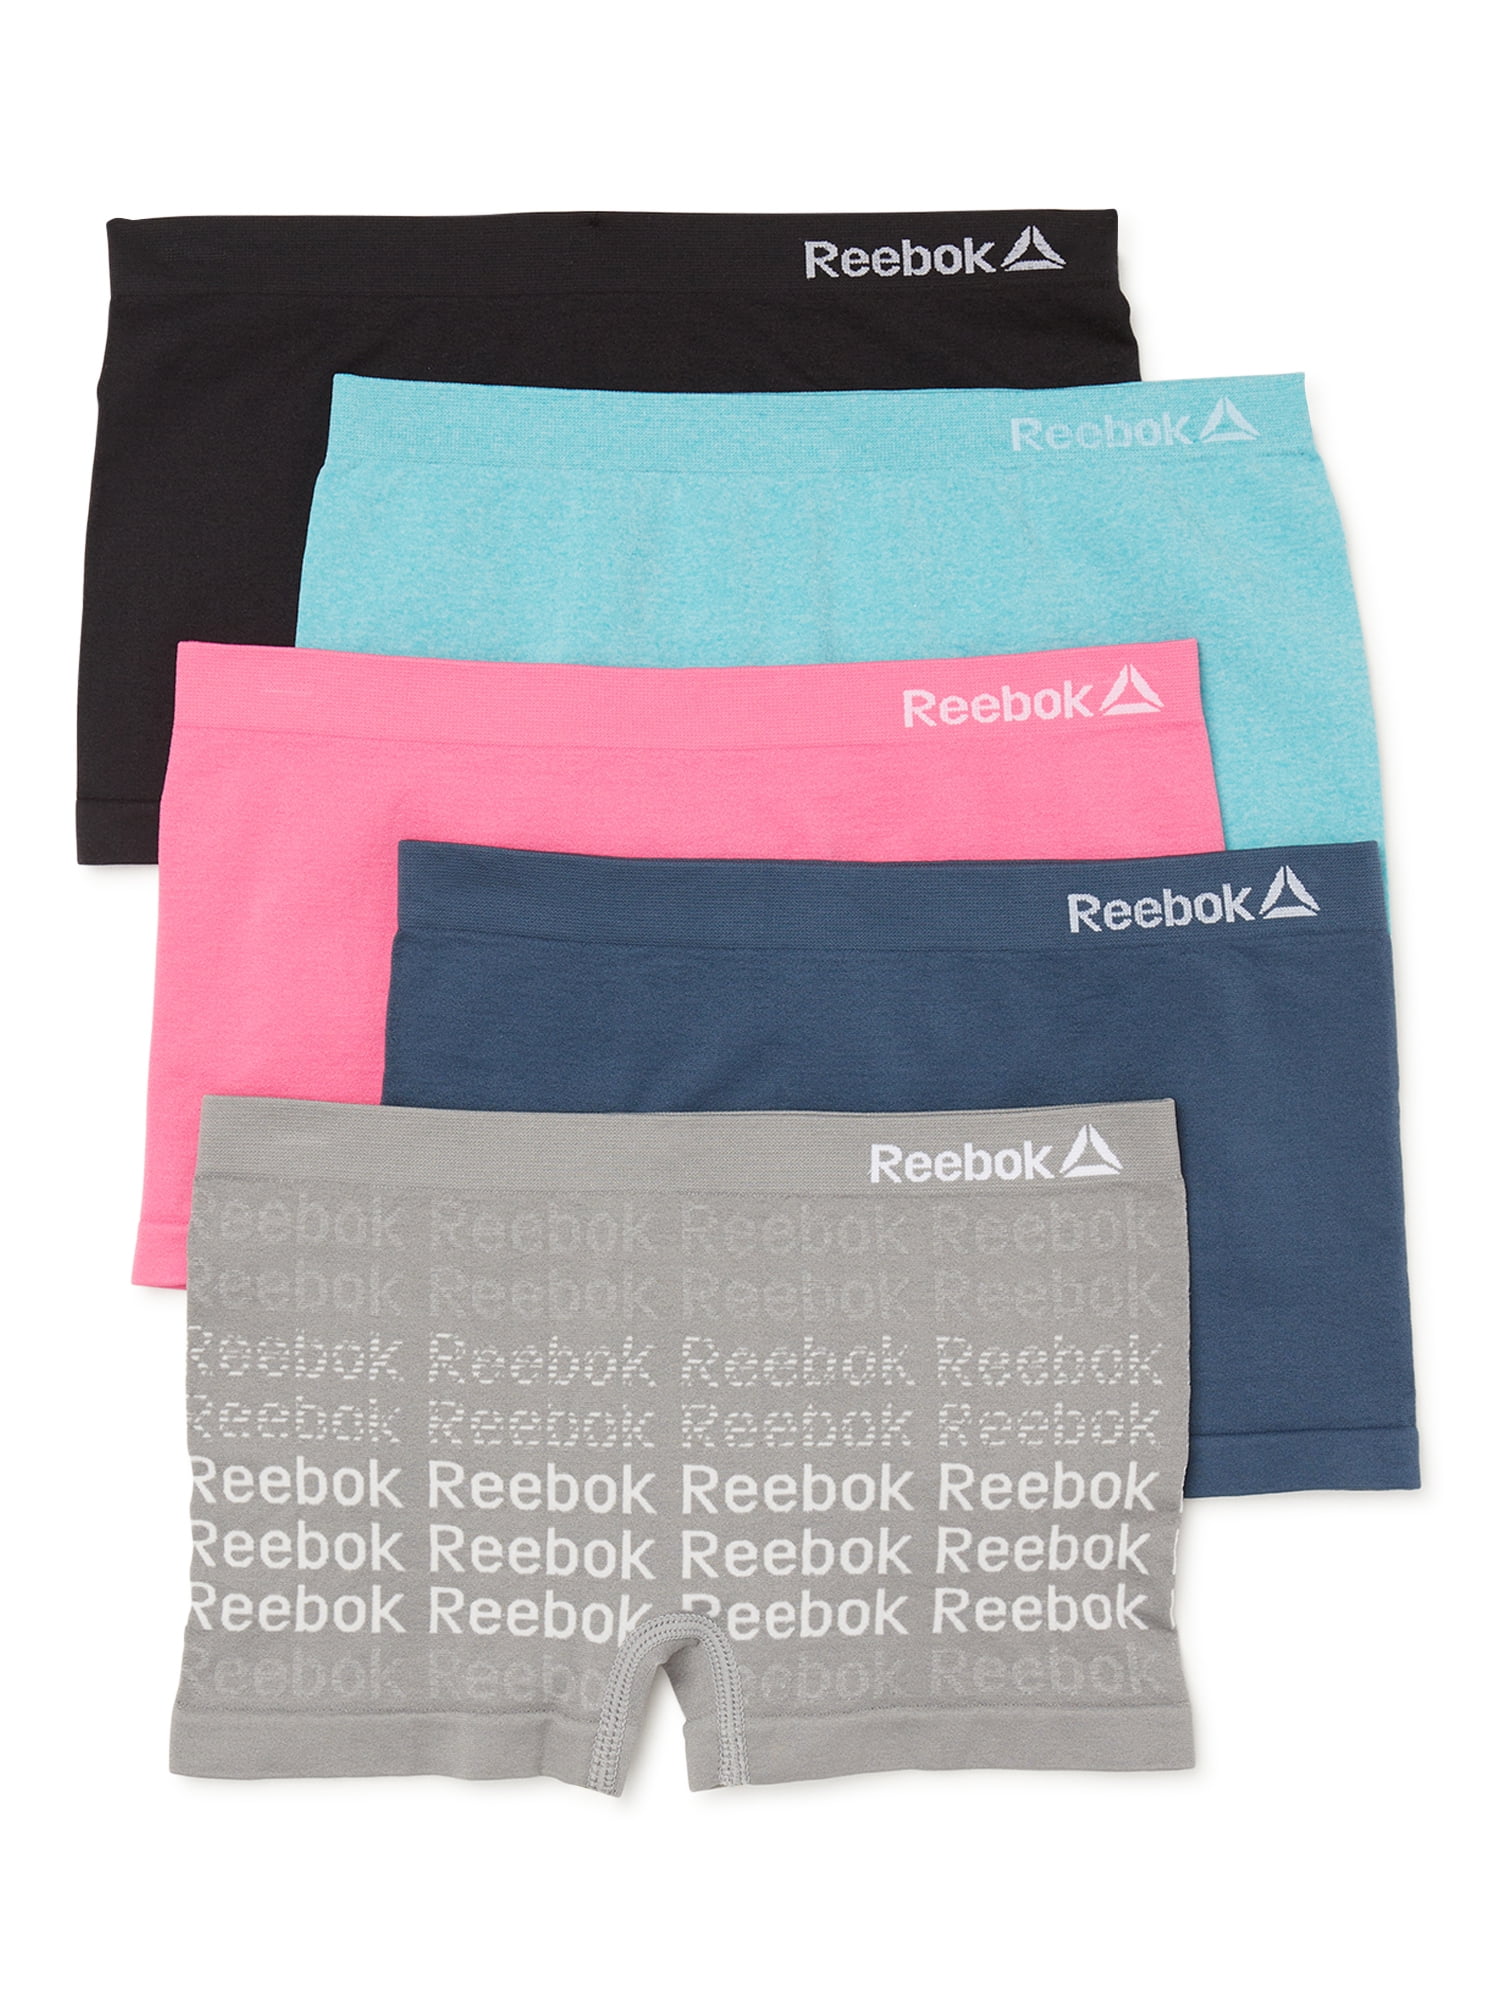 Reebok Girls Seamless Boyshort Panties 5-Pack, Sizes S-XL